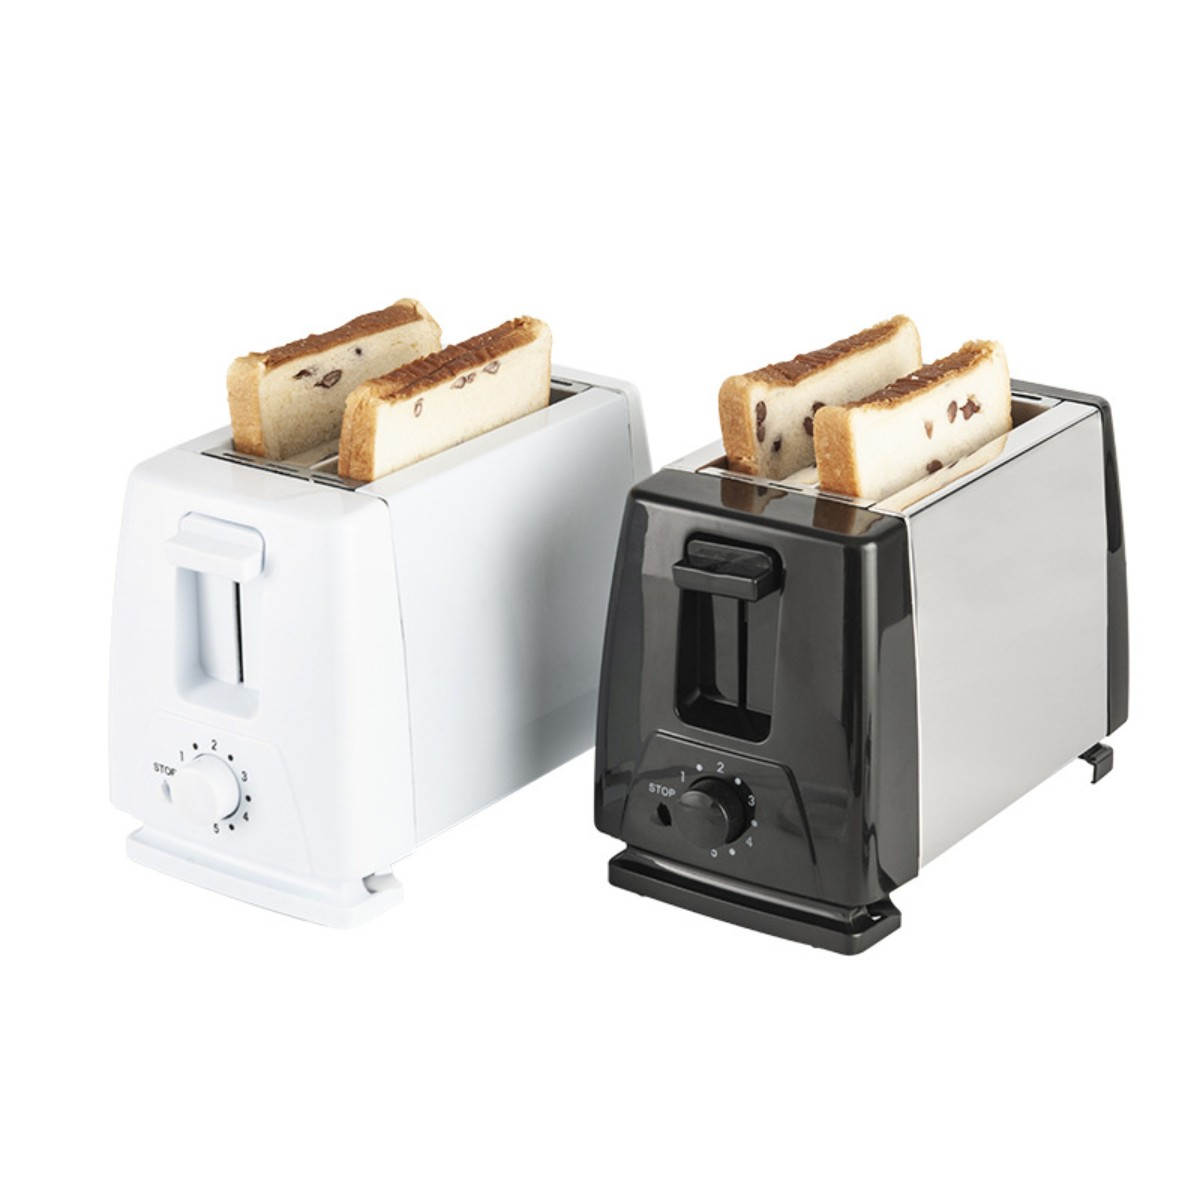 FEI Brotbackautomat 220V Weiß Toaster (750 2) Toaster Maker Frühstück Sandwich Watt, Weiß Toaster Schlitze